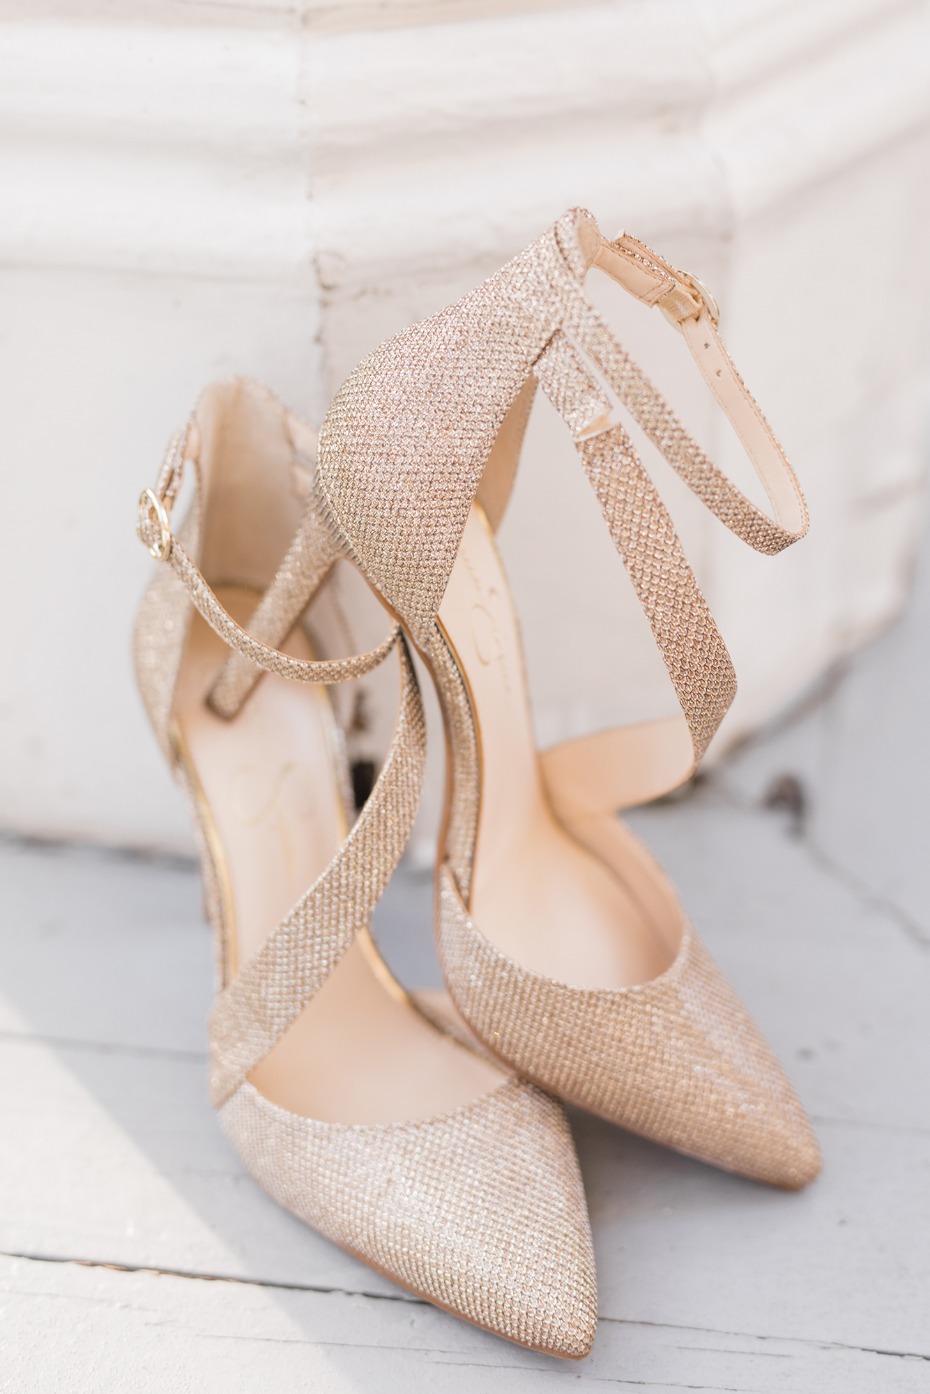 Sparkly Jessica Simpson heels